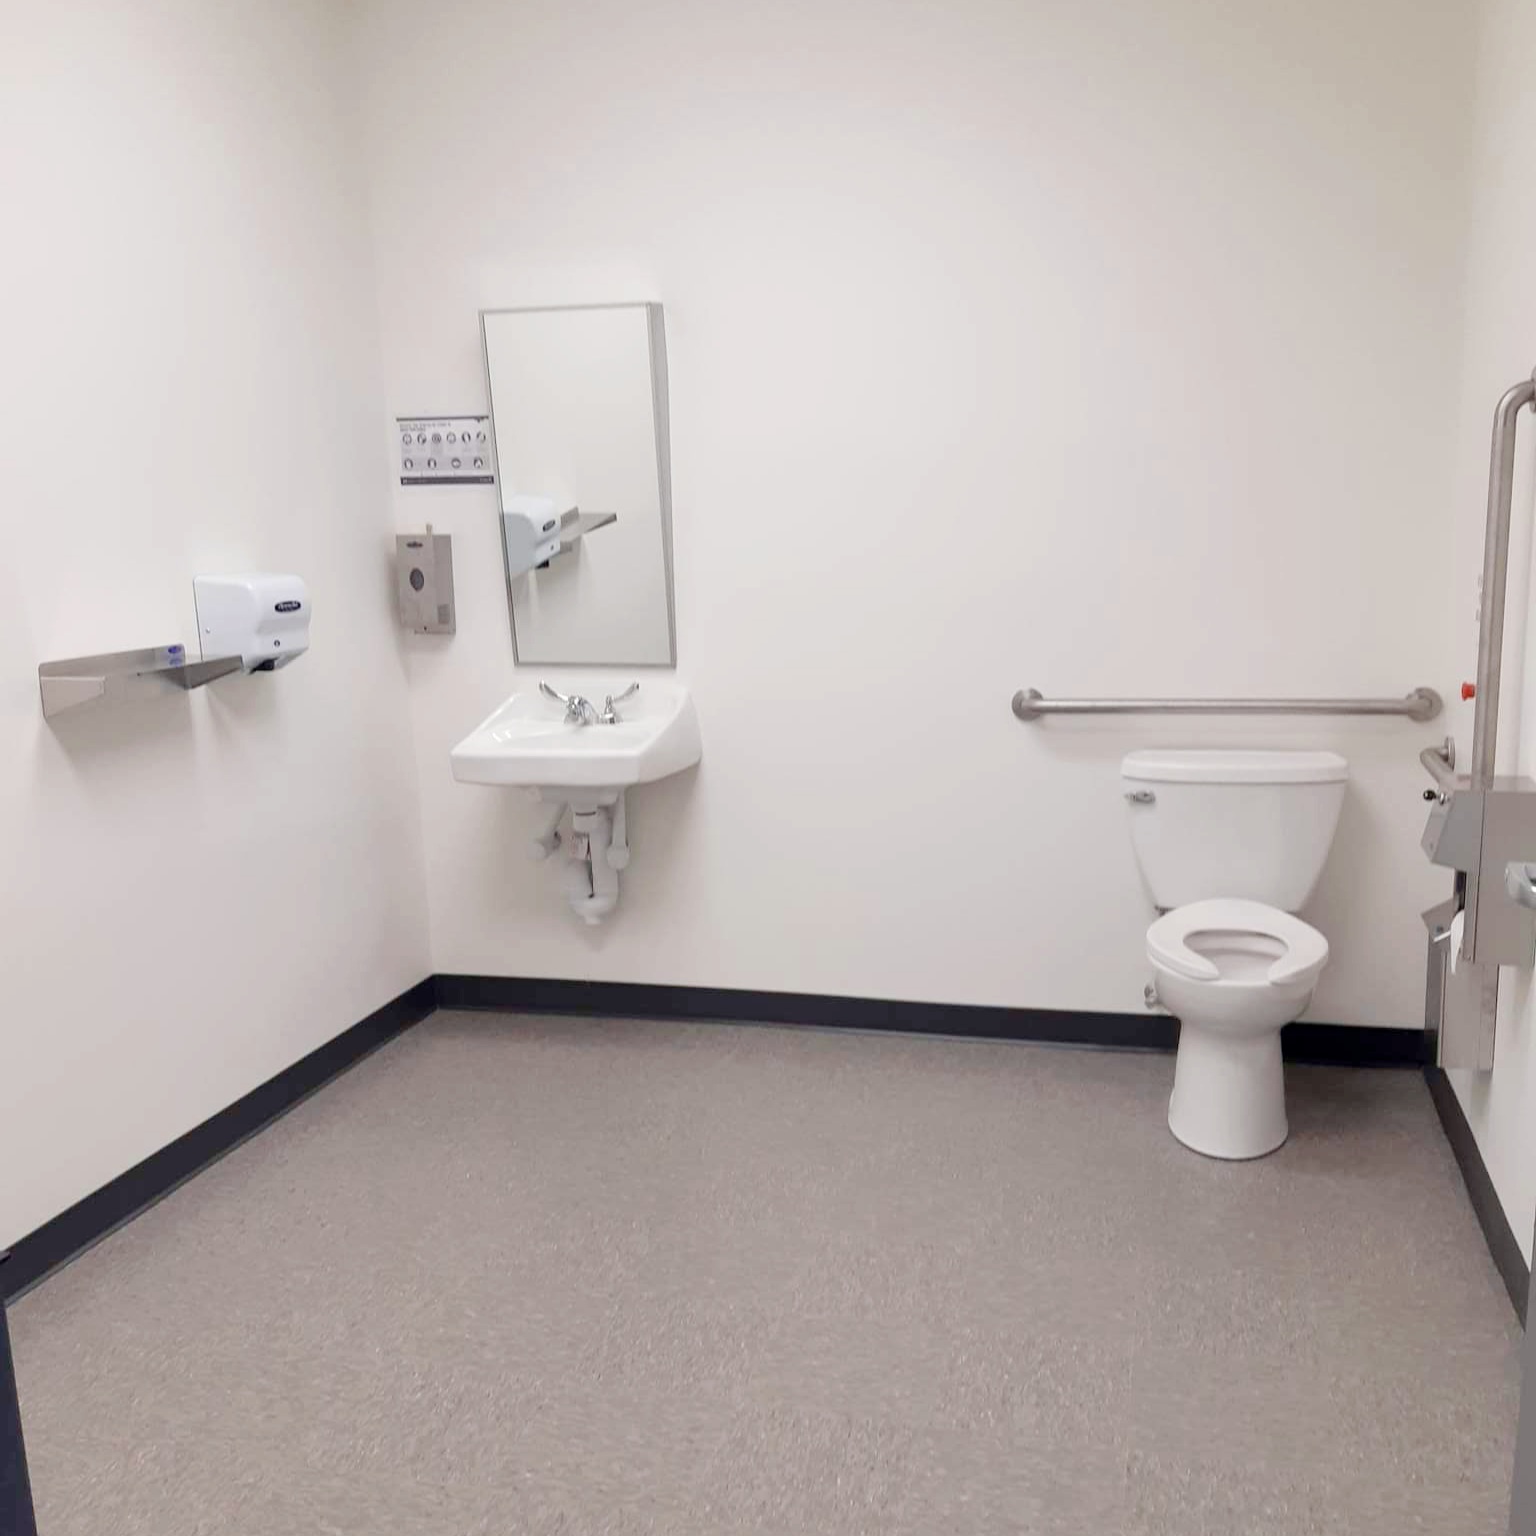 York Region accessible bathroom